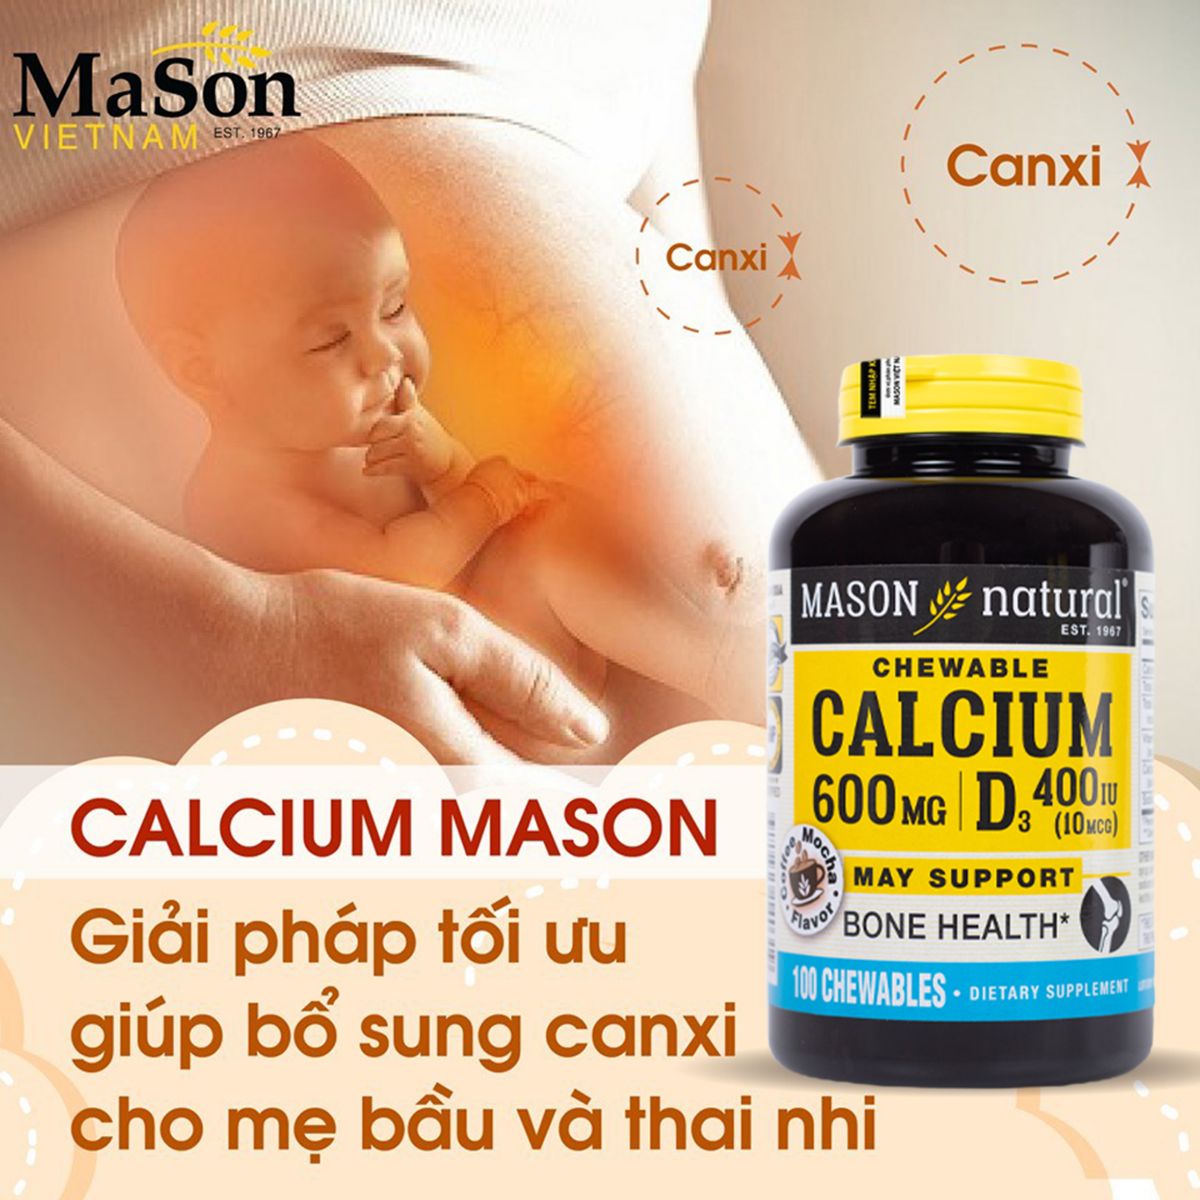  Mason Calcium 600mg + D3 chính là dòng sản phẩm Canxi D3 mà tất cả bà bầu đang tìm kiếm